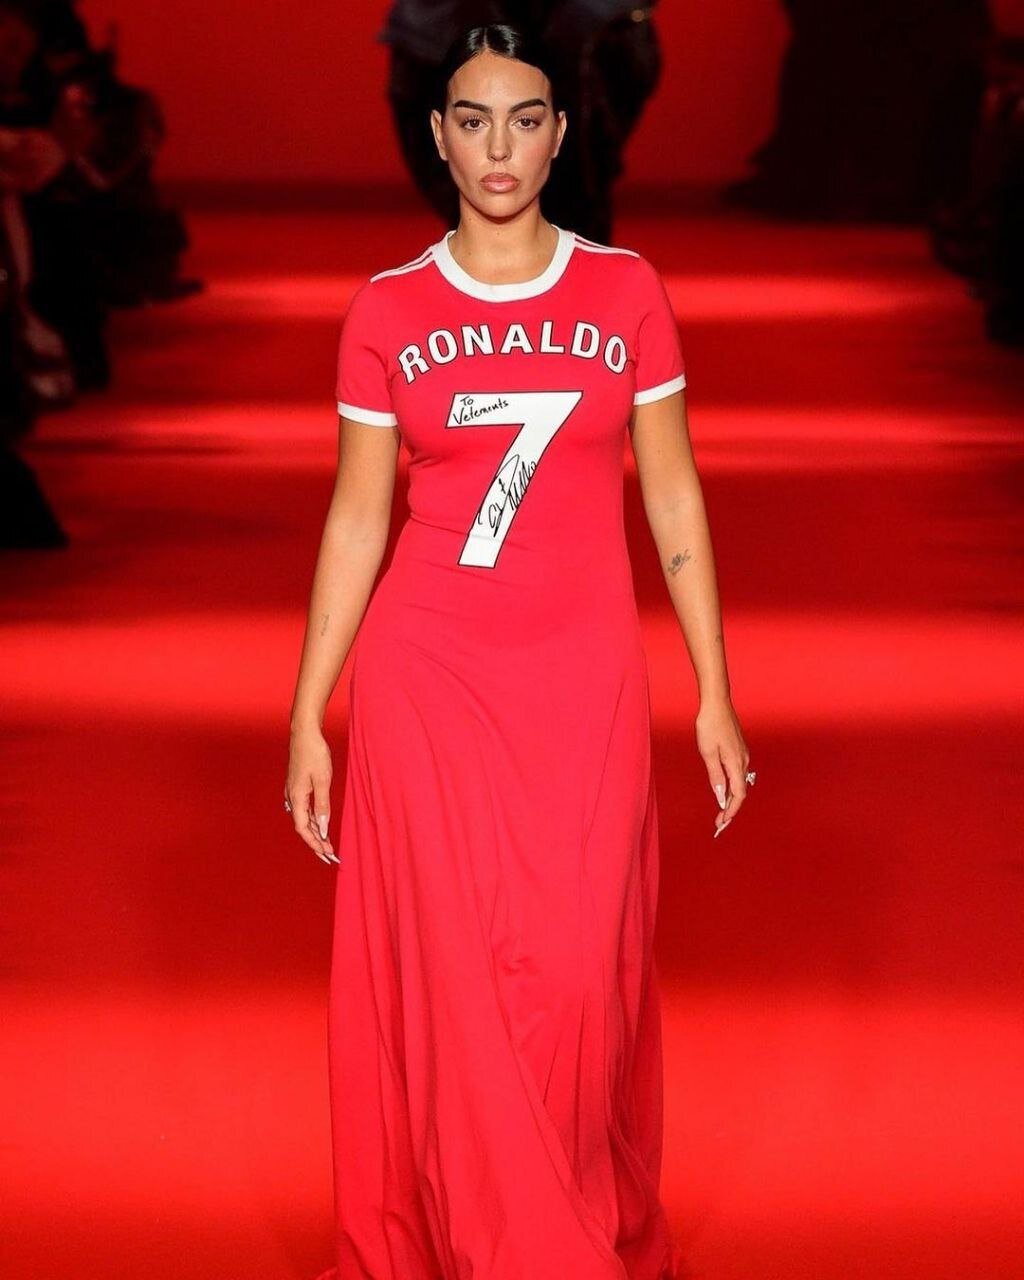 تصویر نامزد رونالدو با لباس مجلسی کریس در سالن مد | تیپ عجیب با شماره ۷